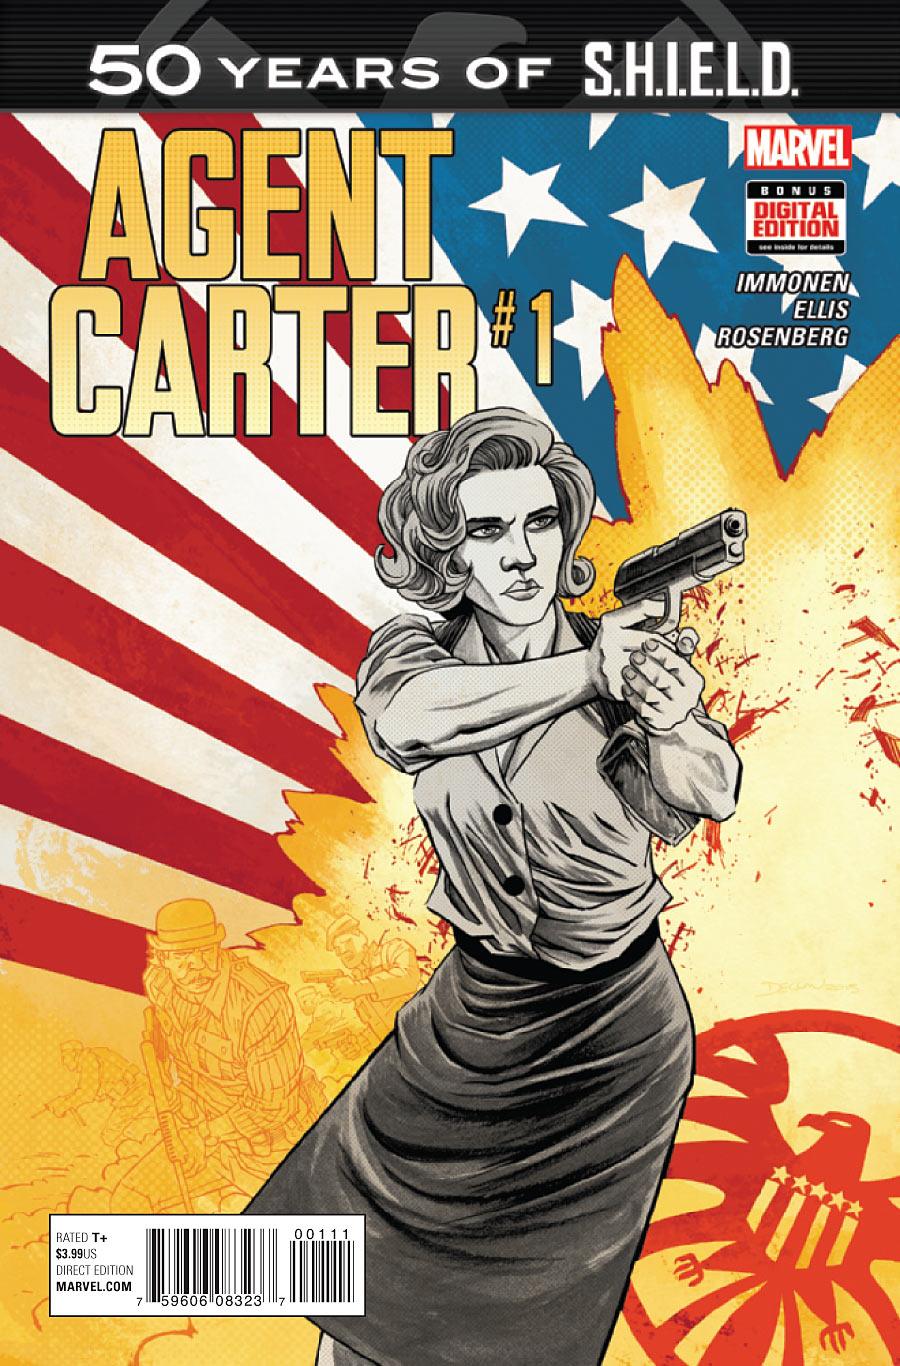 Agent Carter: S.H.I.E.L.D. 50th Anniversary Vol. 1 #1